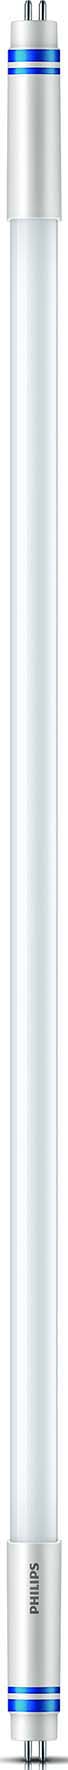 Philips Lighting LED-Tube T5 f. EVG G5, 830, 1149mm MASLEDtube#74329400 günstig online kaufen